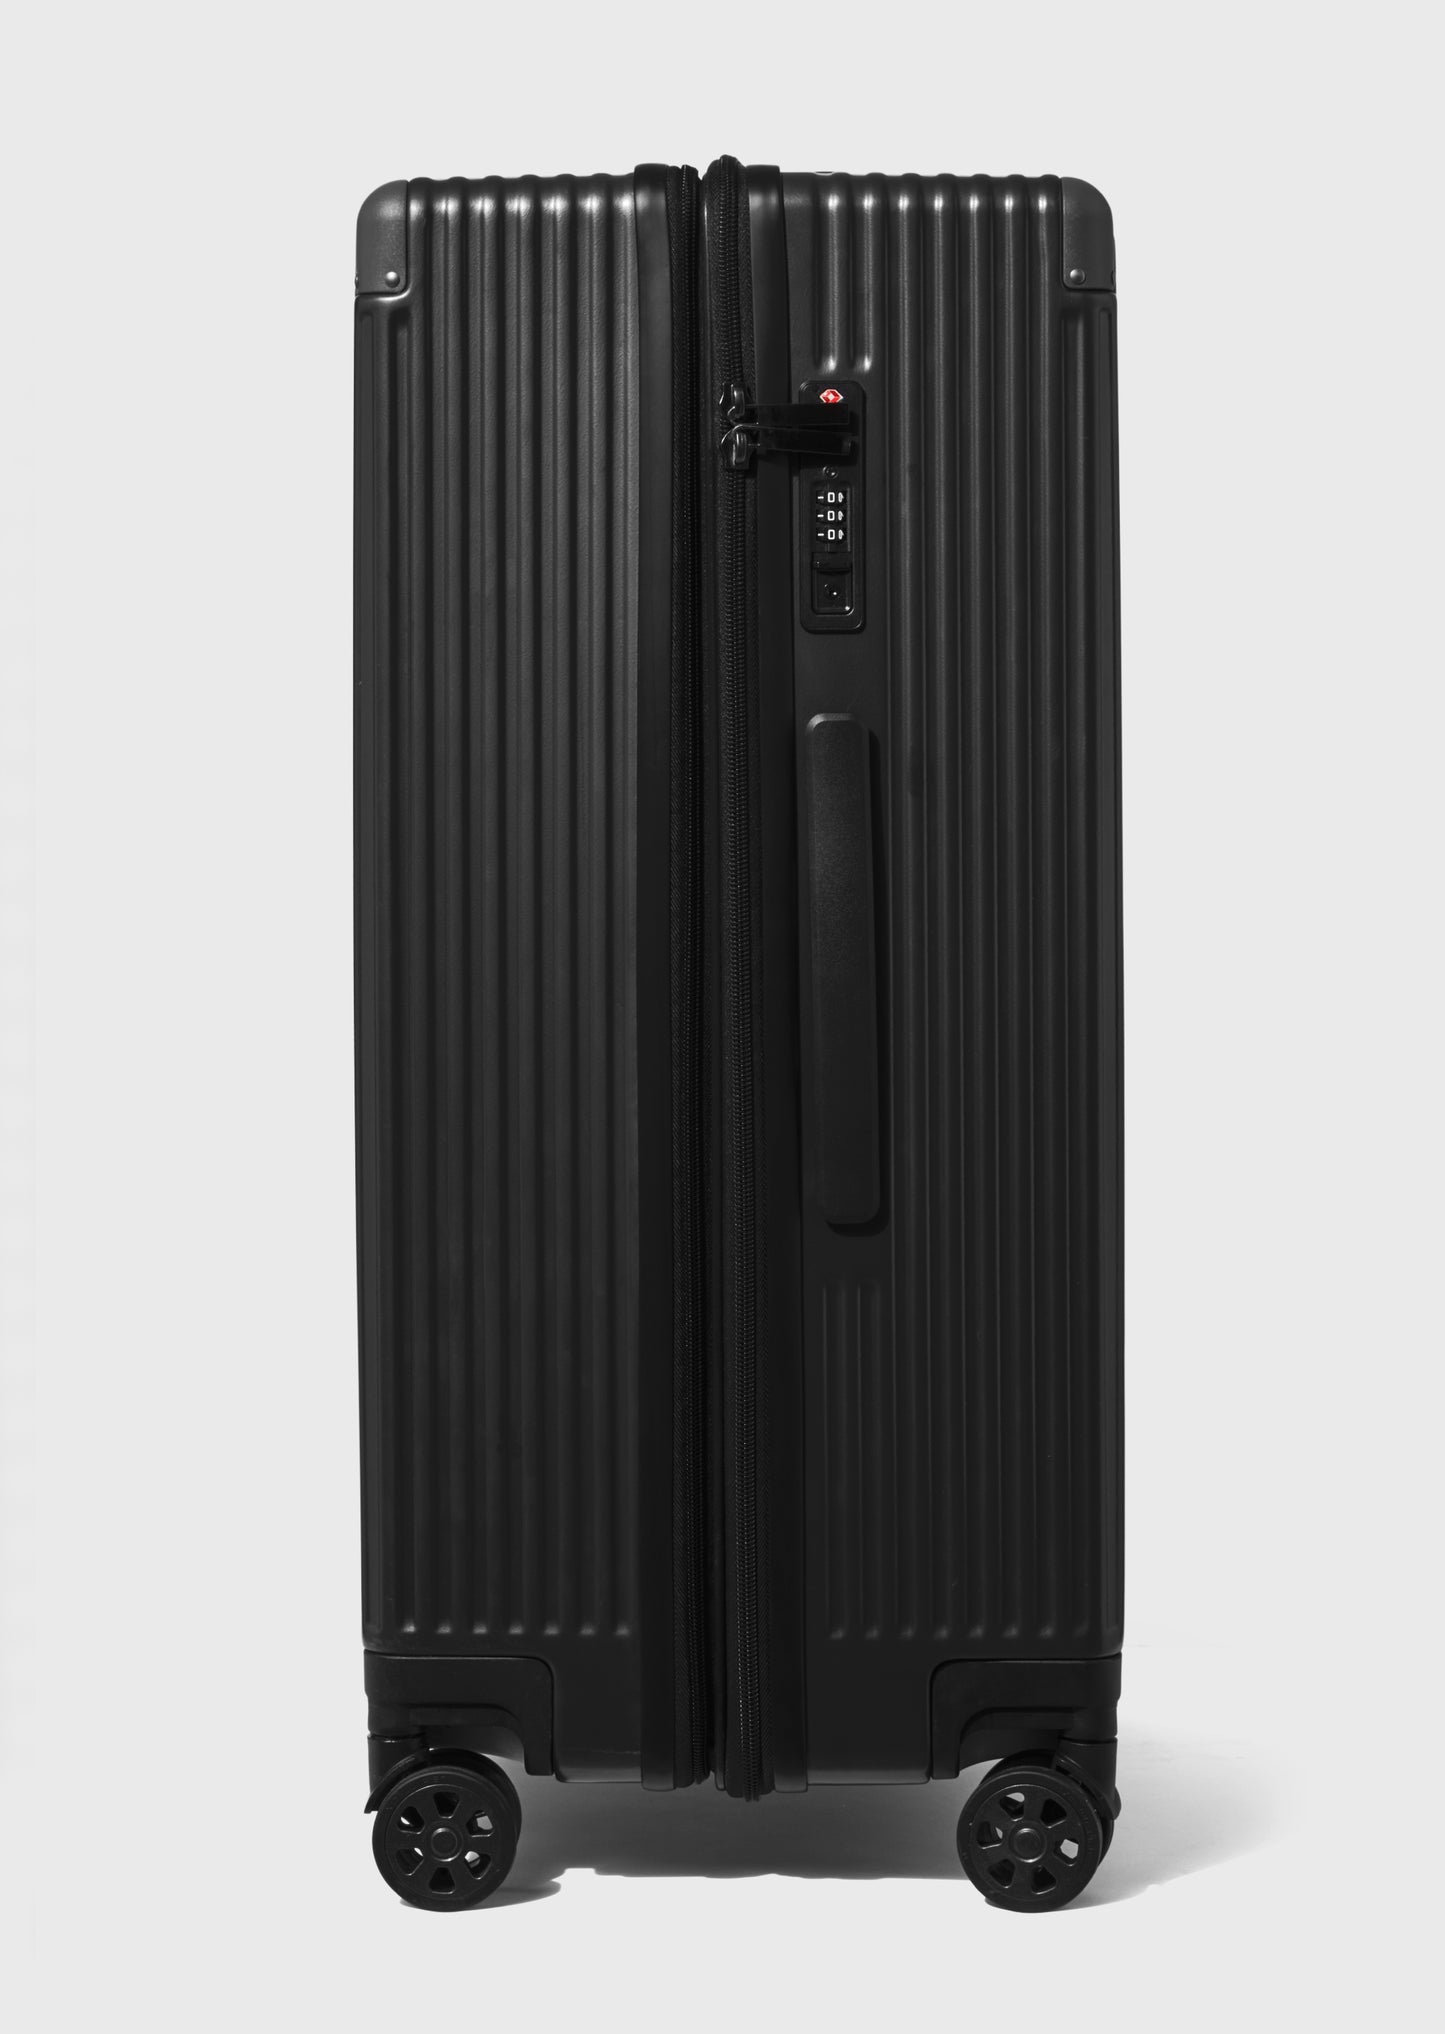 Stalham Black 26" Suitcase